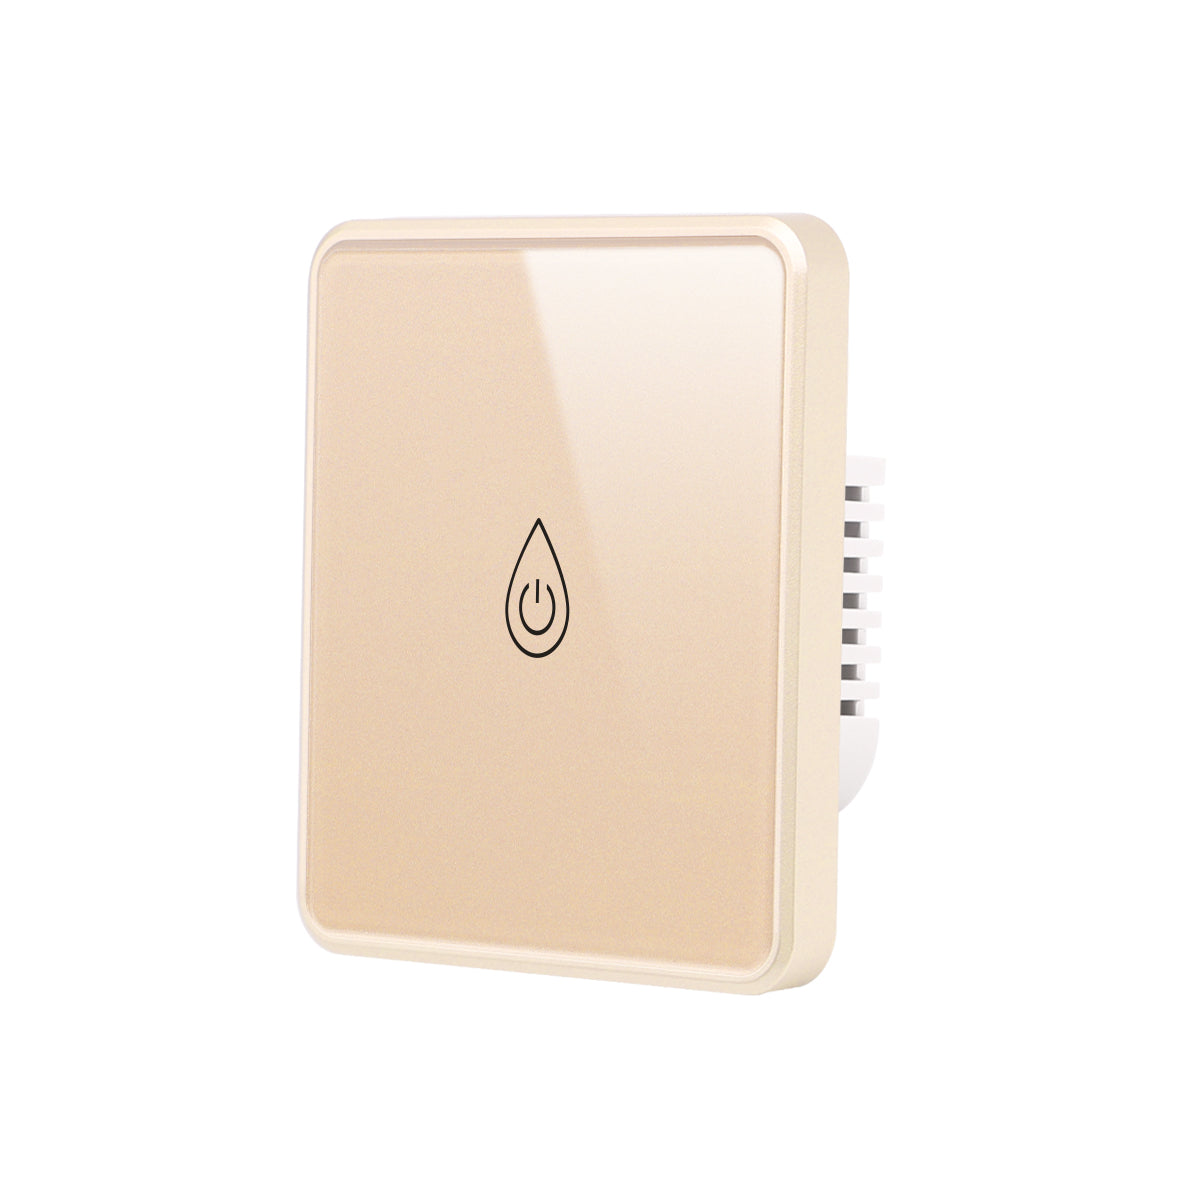 WiFi Smart Boiler Switch Water Heat Switch